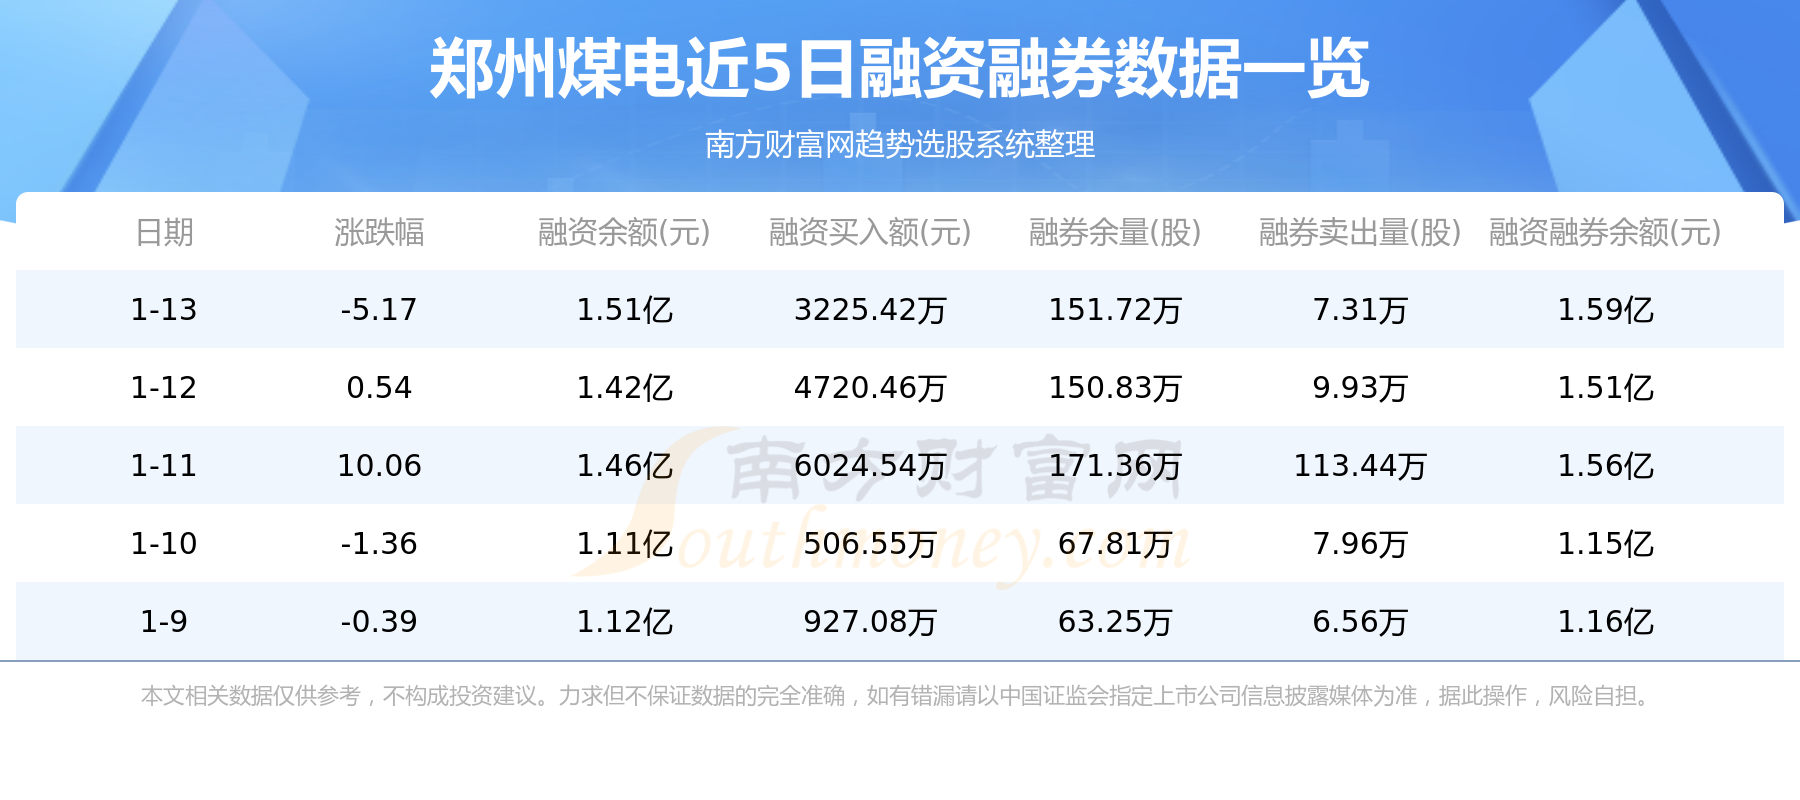 郑州煤电1月13日主力资金净流出9431.53万元